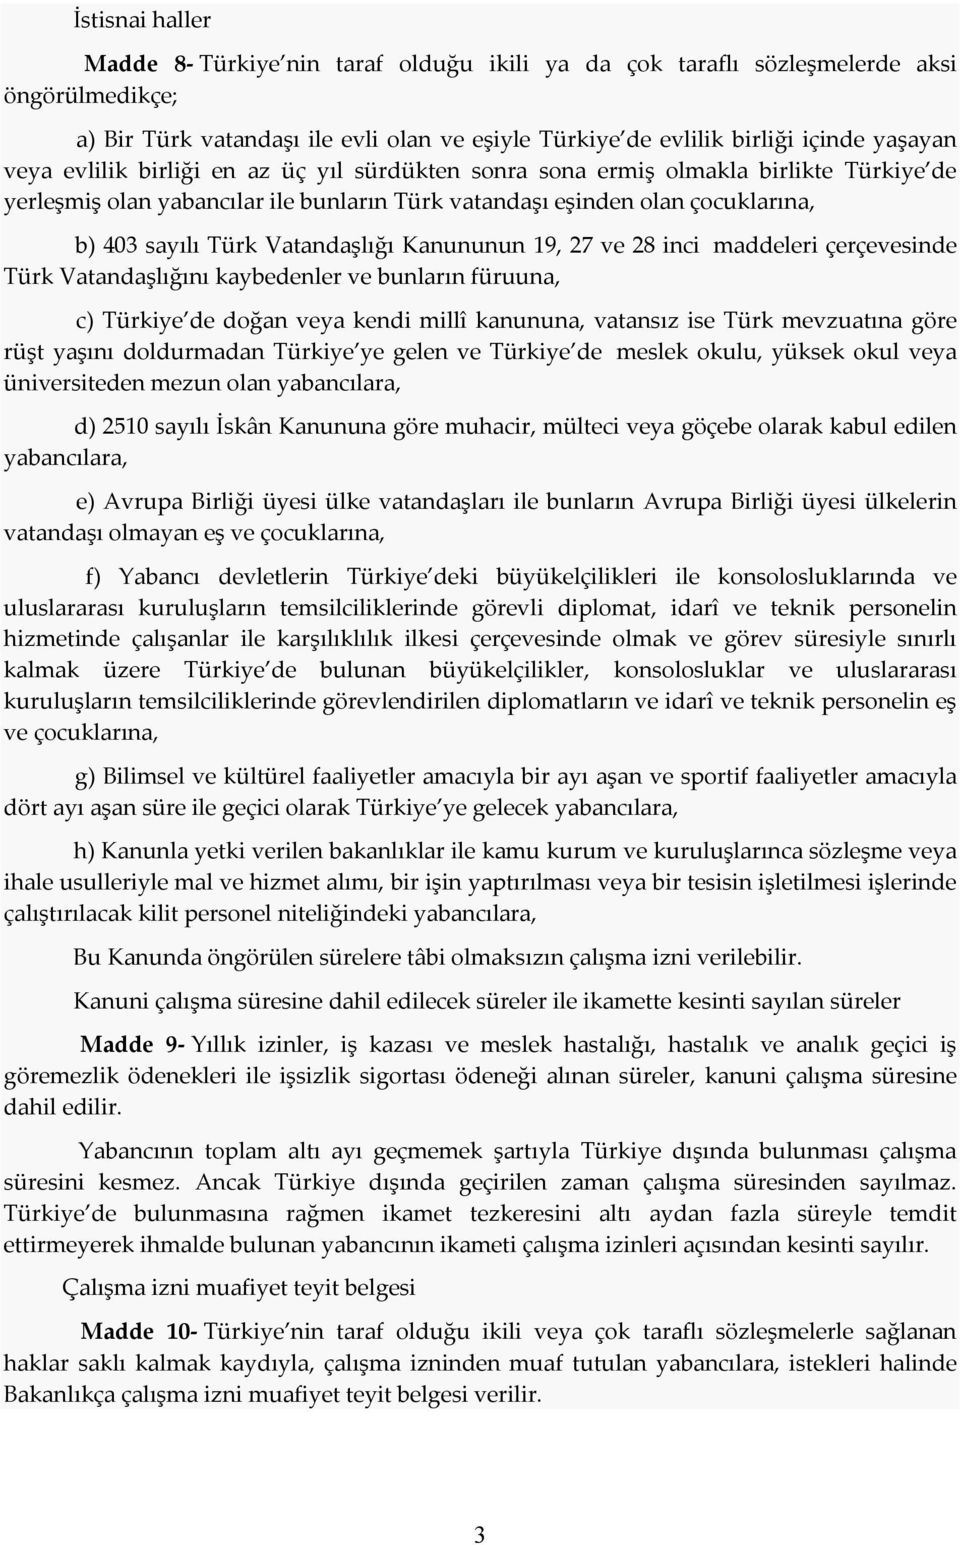 Vatandaşlığı Kanununun 19, 27 ve 28 inci maddeleri çerçevesinde Türk Vatandaşlığını kaybedenler ve bunların füruuna, c) Türkiye de doğan veya kendi millî kanununa, vatansız ise Türk mevzuatına göre